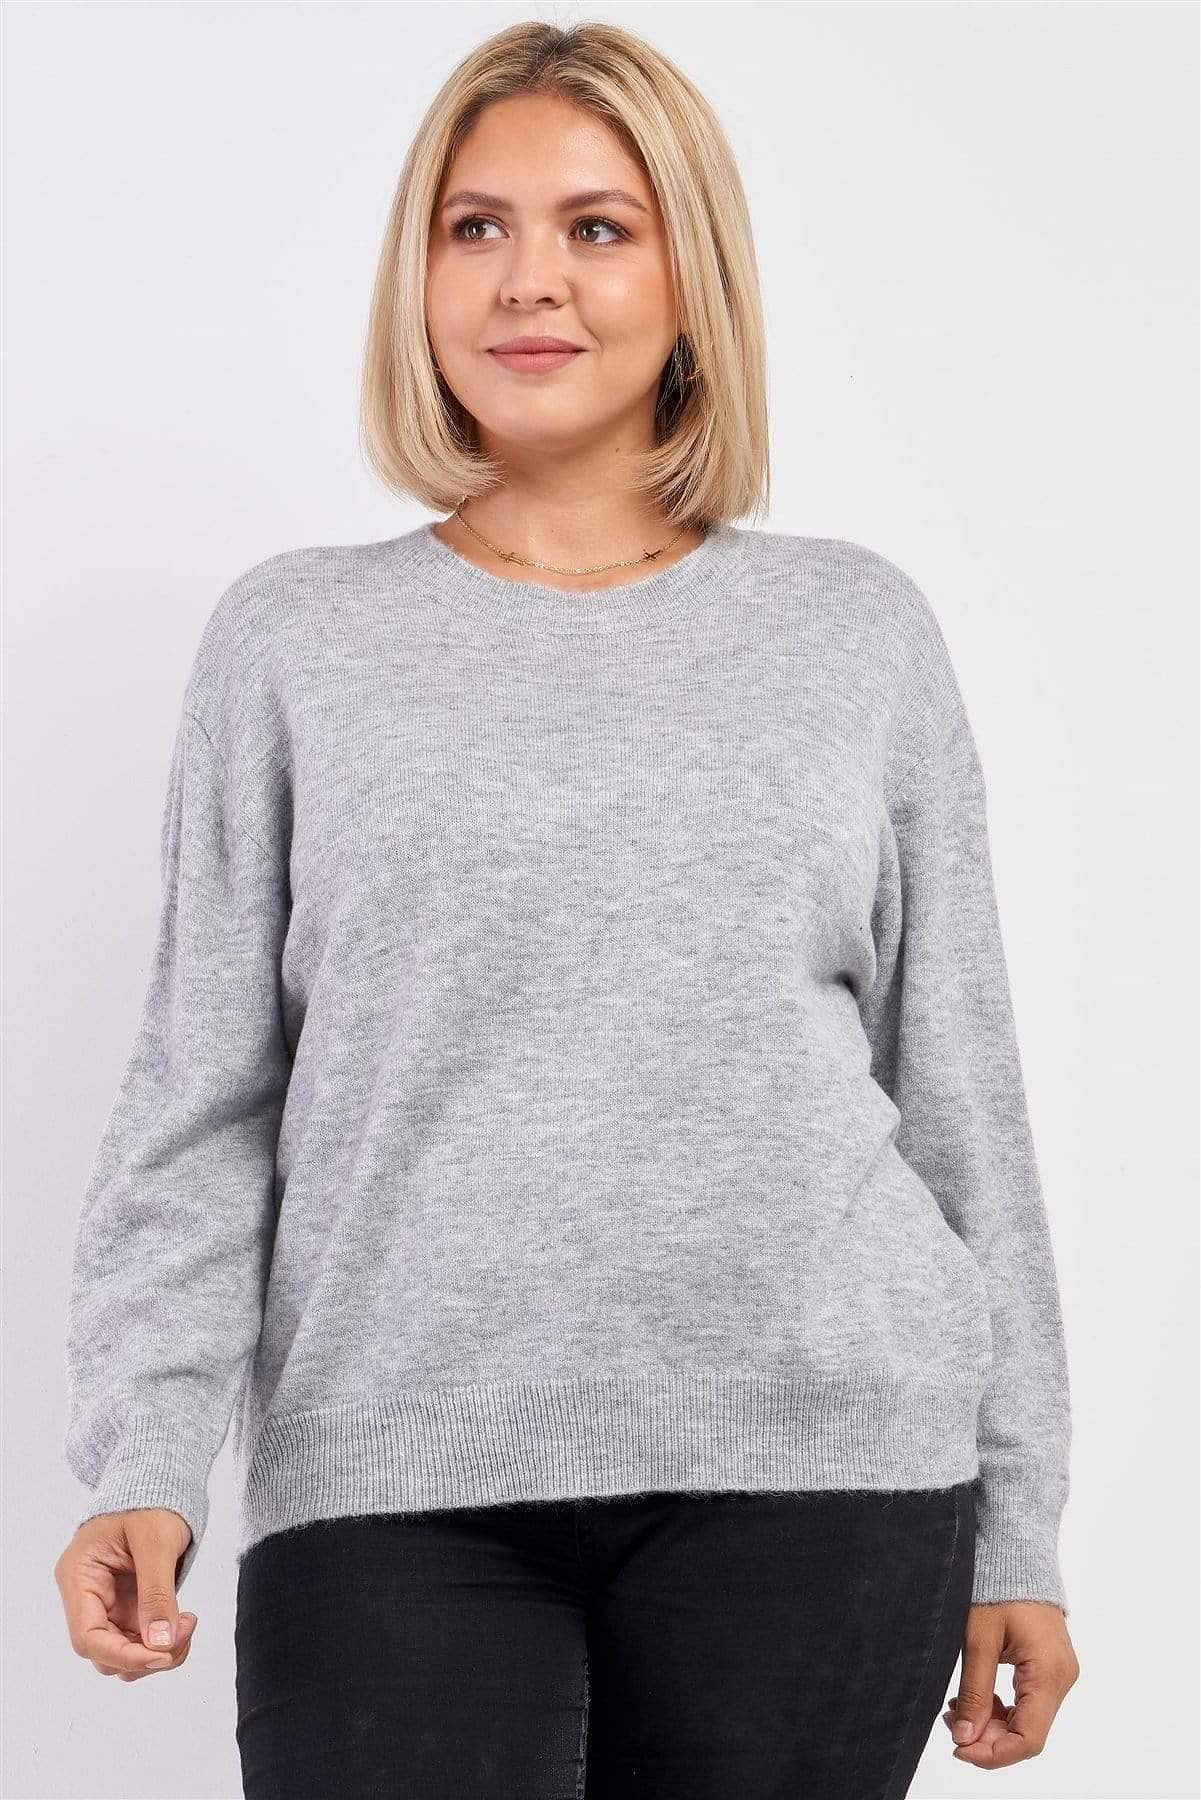 Heather Gray Plus Size Long Sleeve Sweatshirt